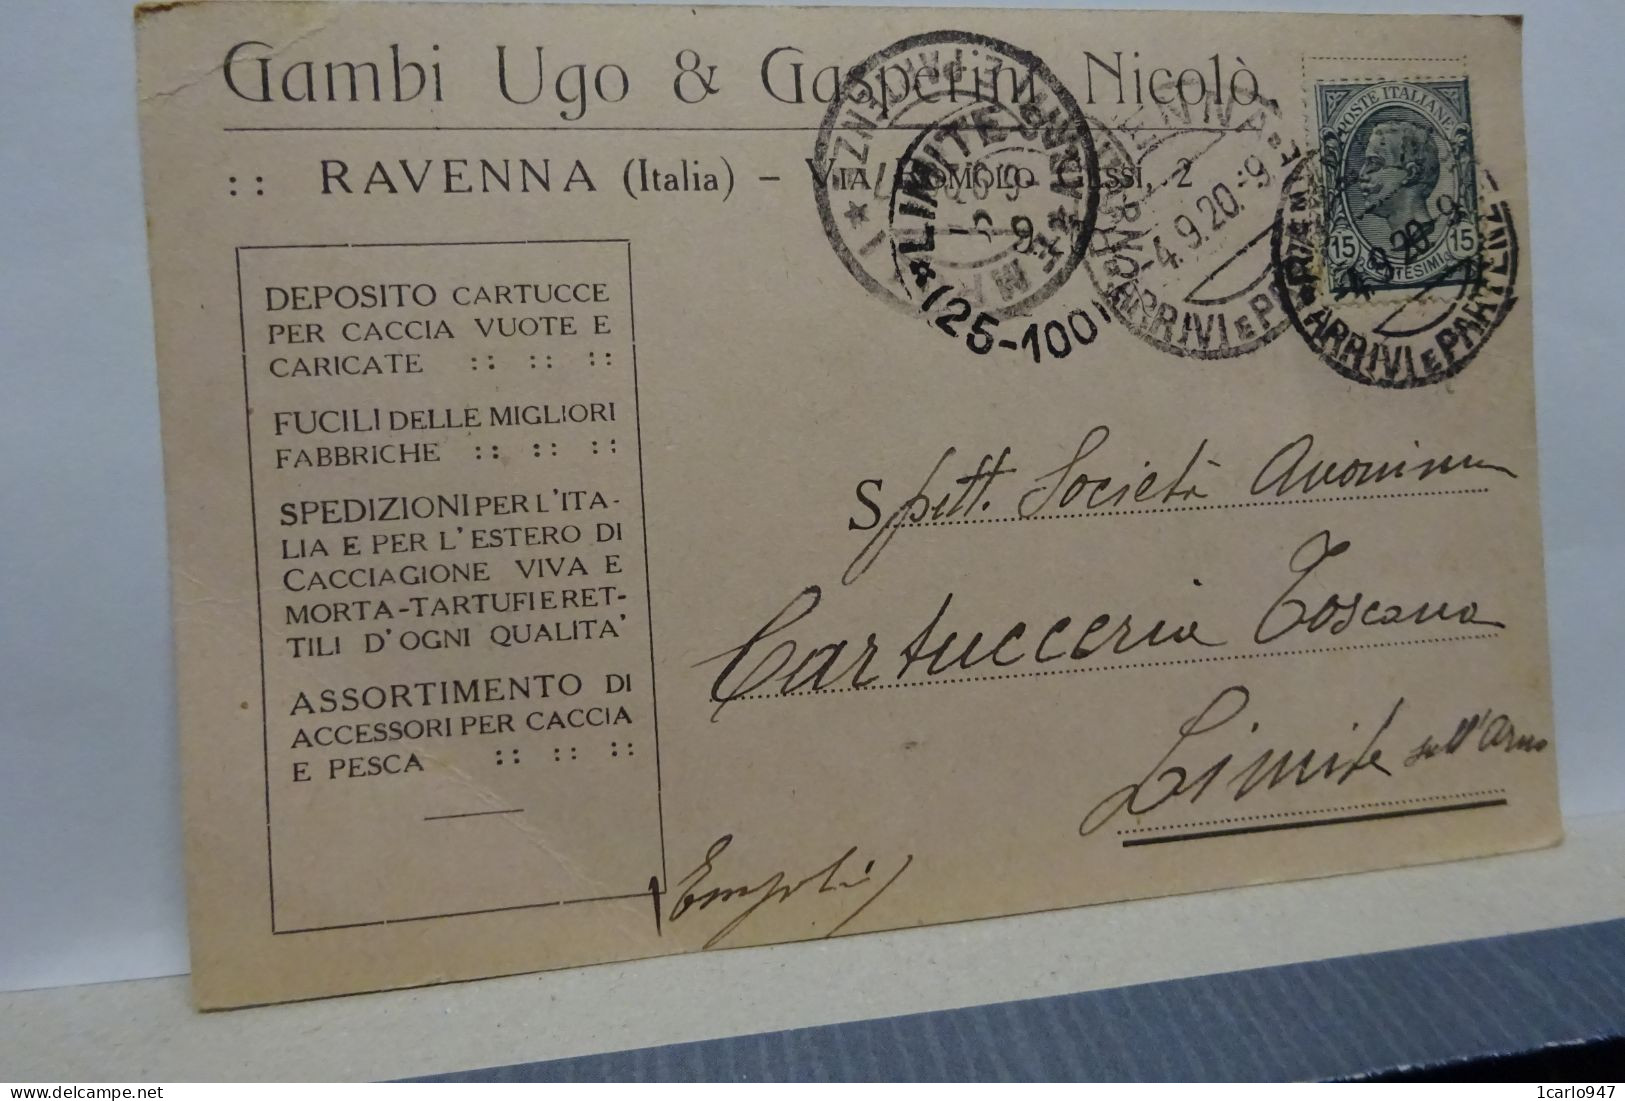 RAVENNA  ---  GAMBI  UGO  &  GASPERINI NICOLO -- CARTUCCE PER CACCIA - Ravenna